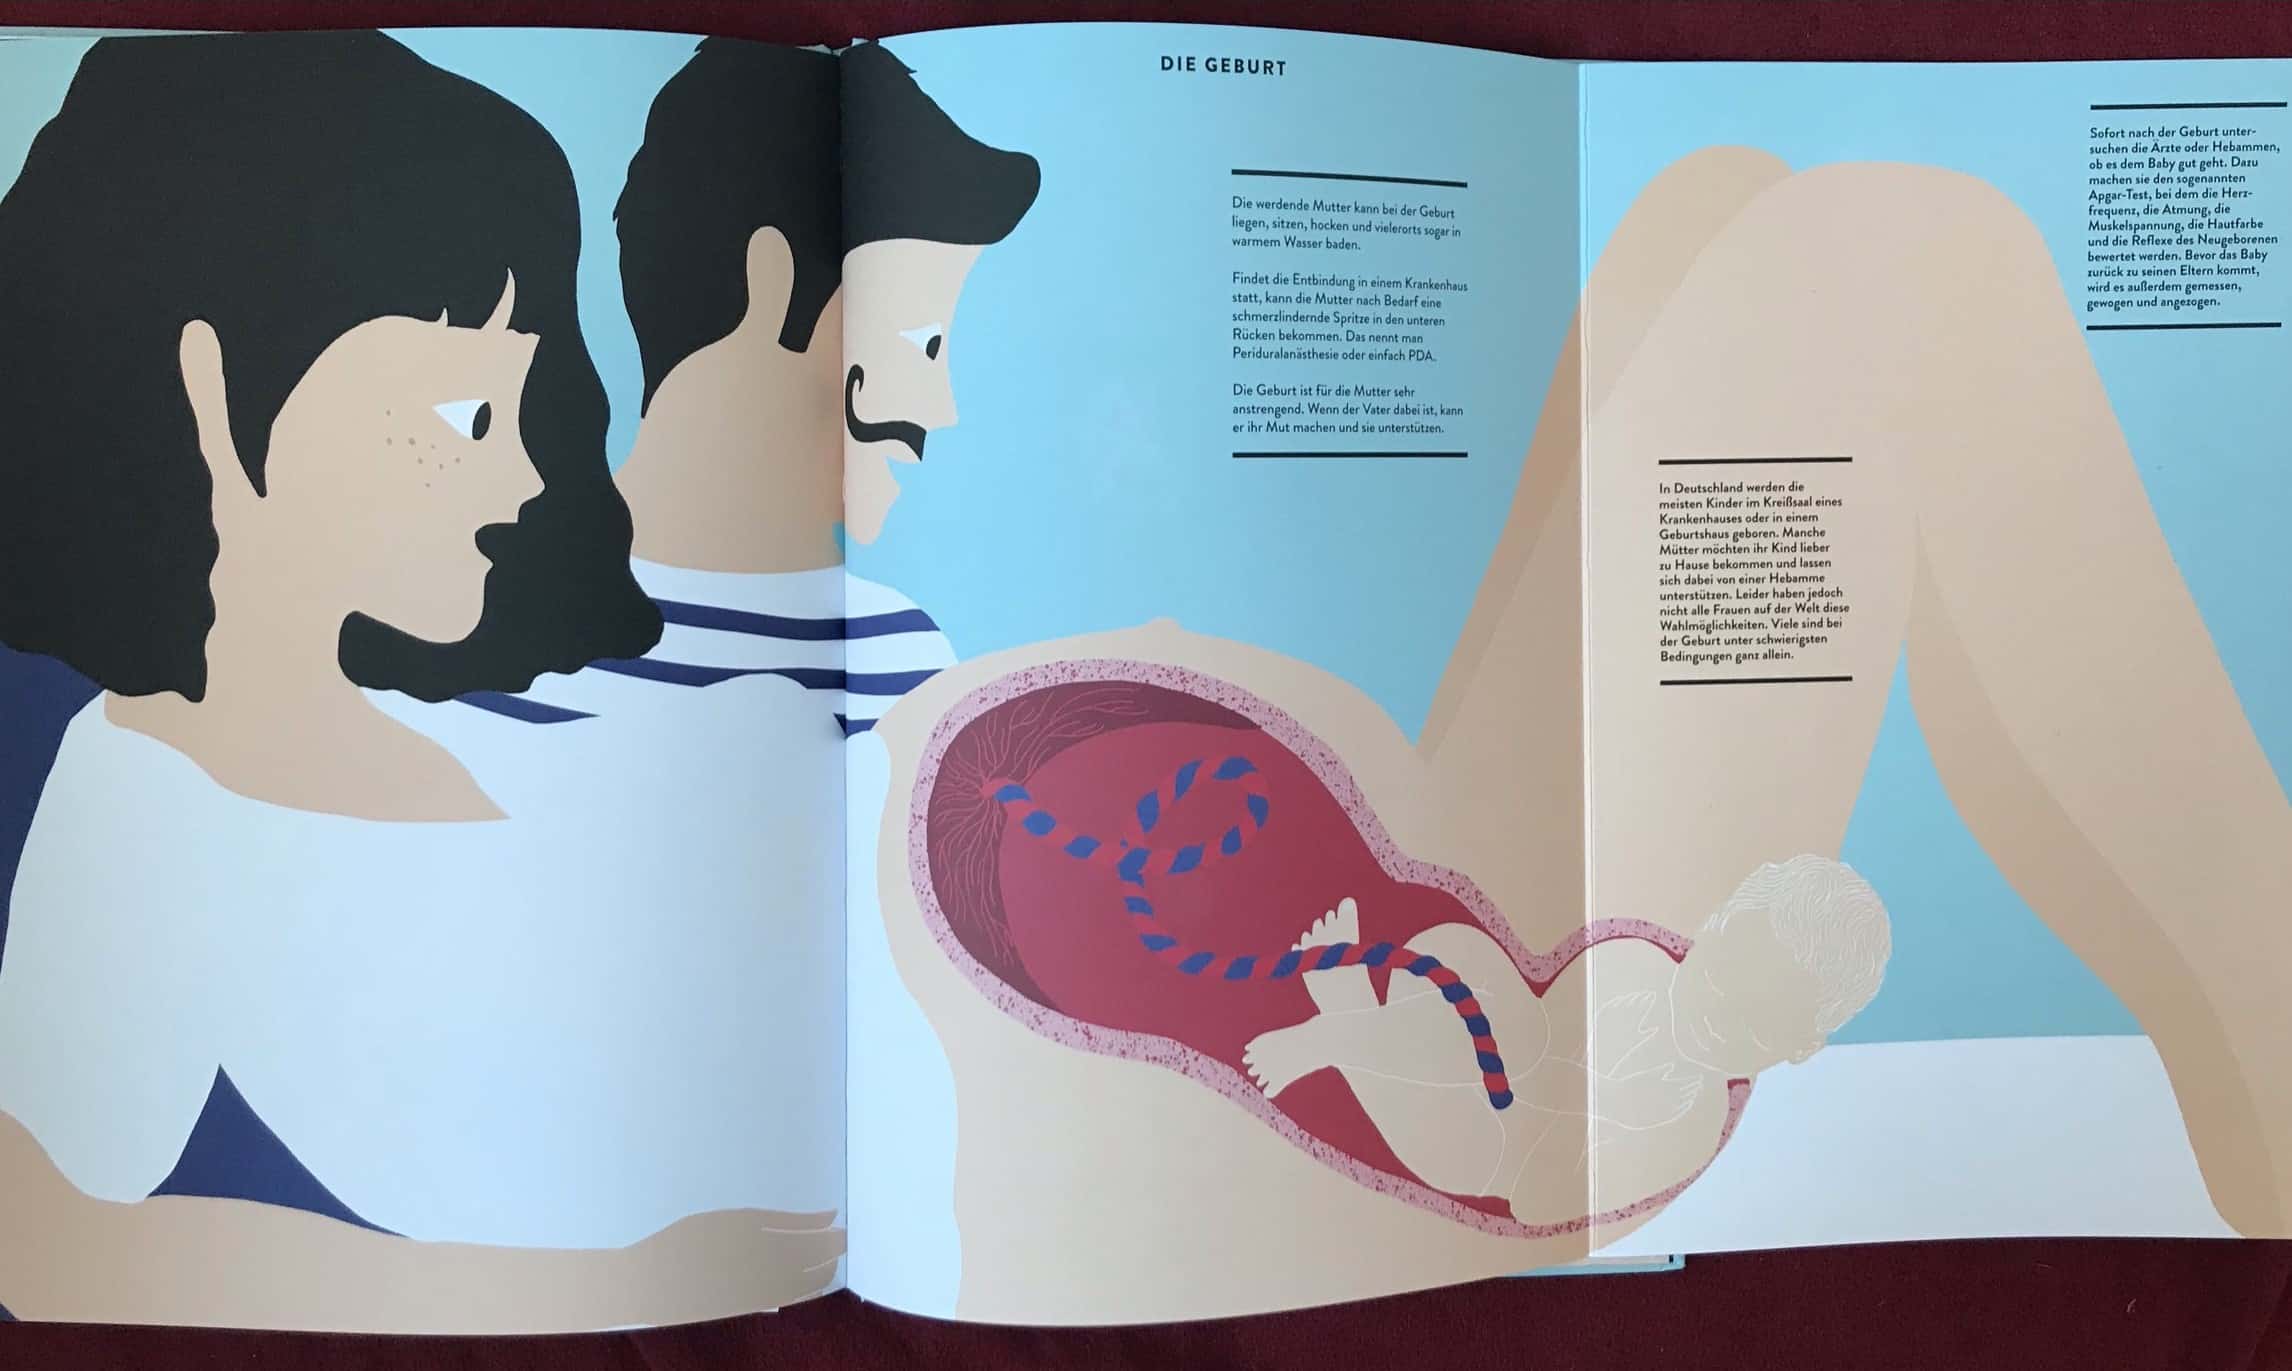 Abb. 4 "Die Geburt": Durch das Buch führt das immer gleiche Elternpaar.